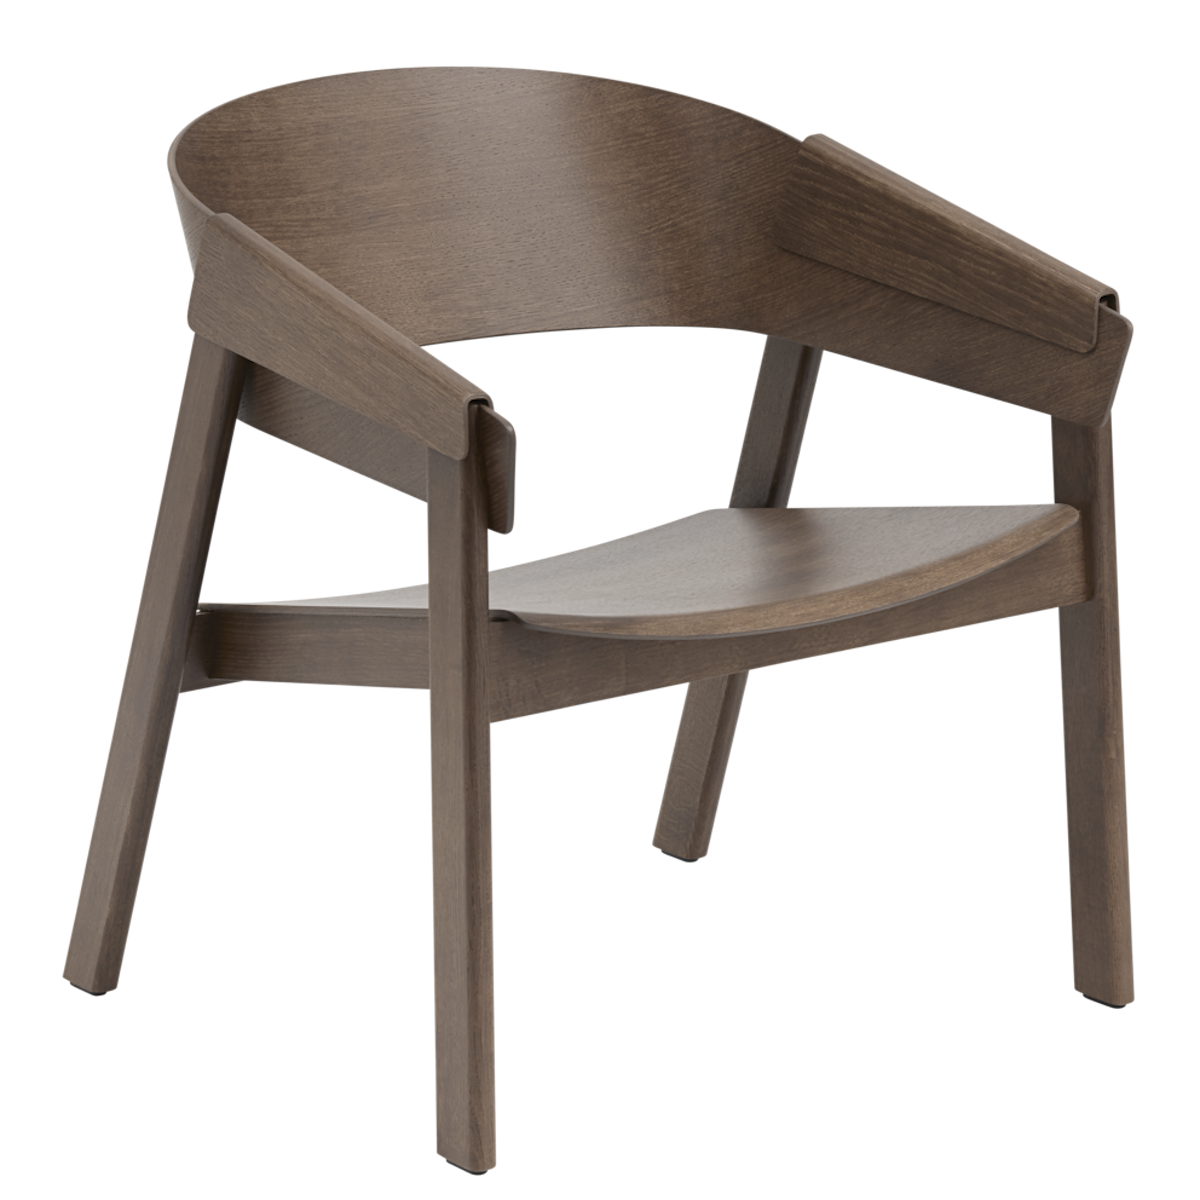 chêne teinté brun foncé - fauteuil Cover Lounge Chair